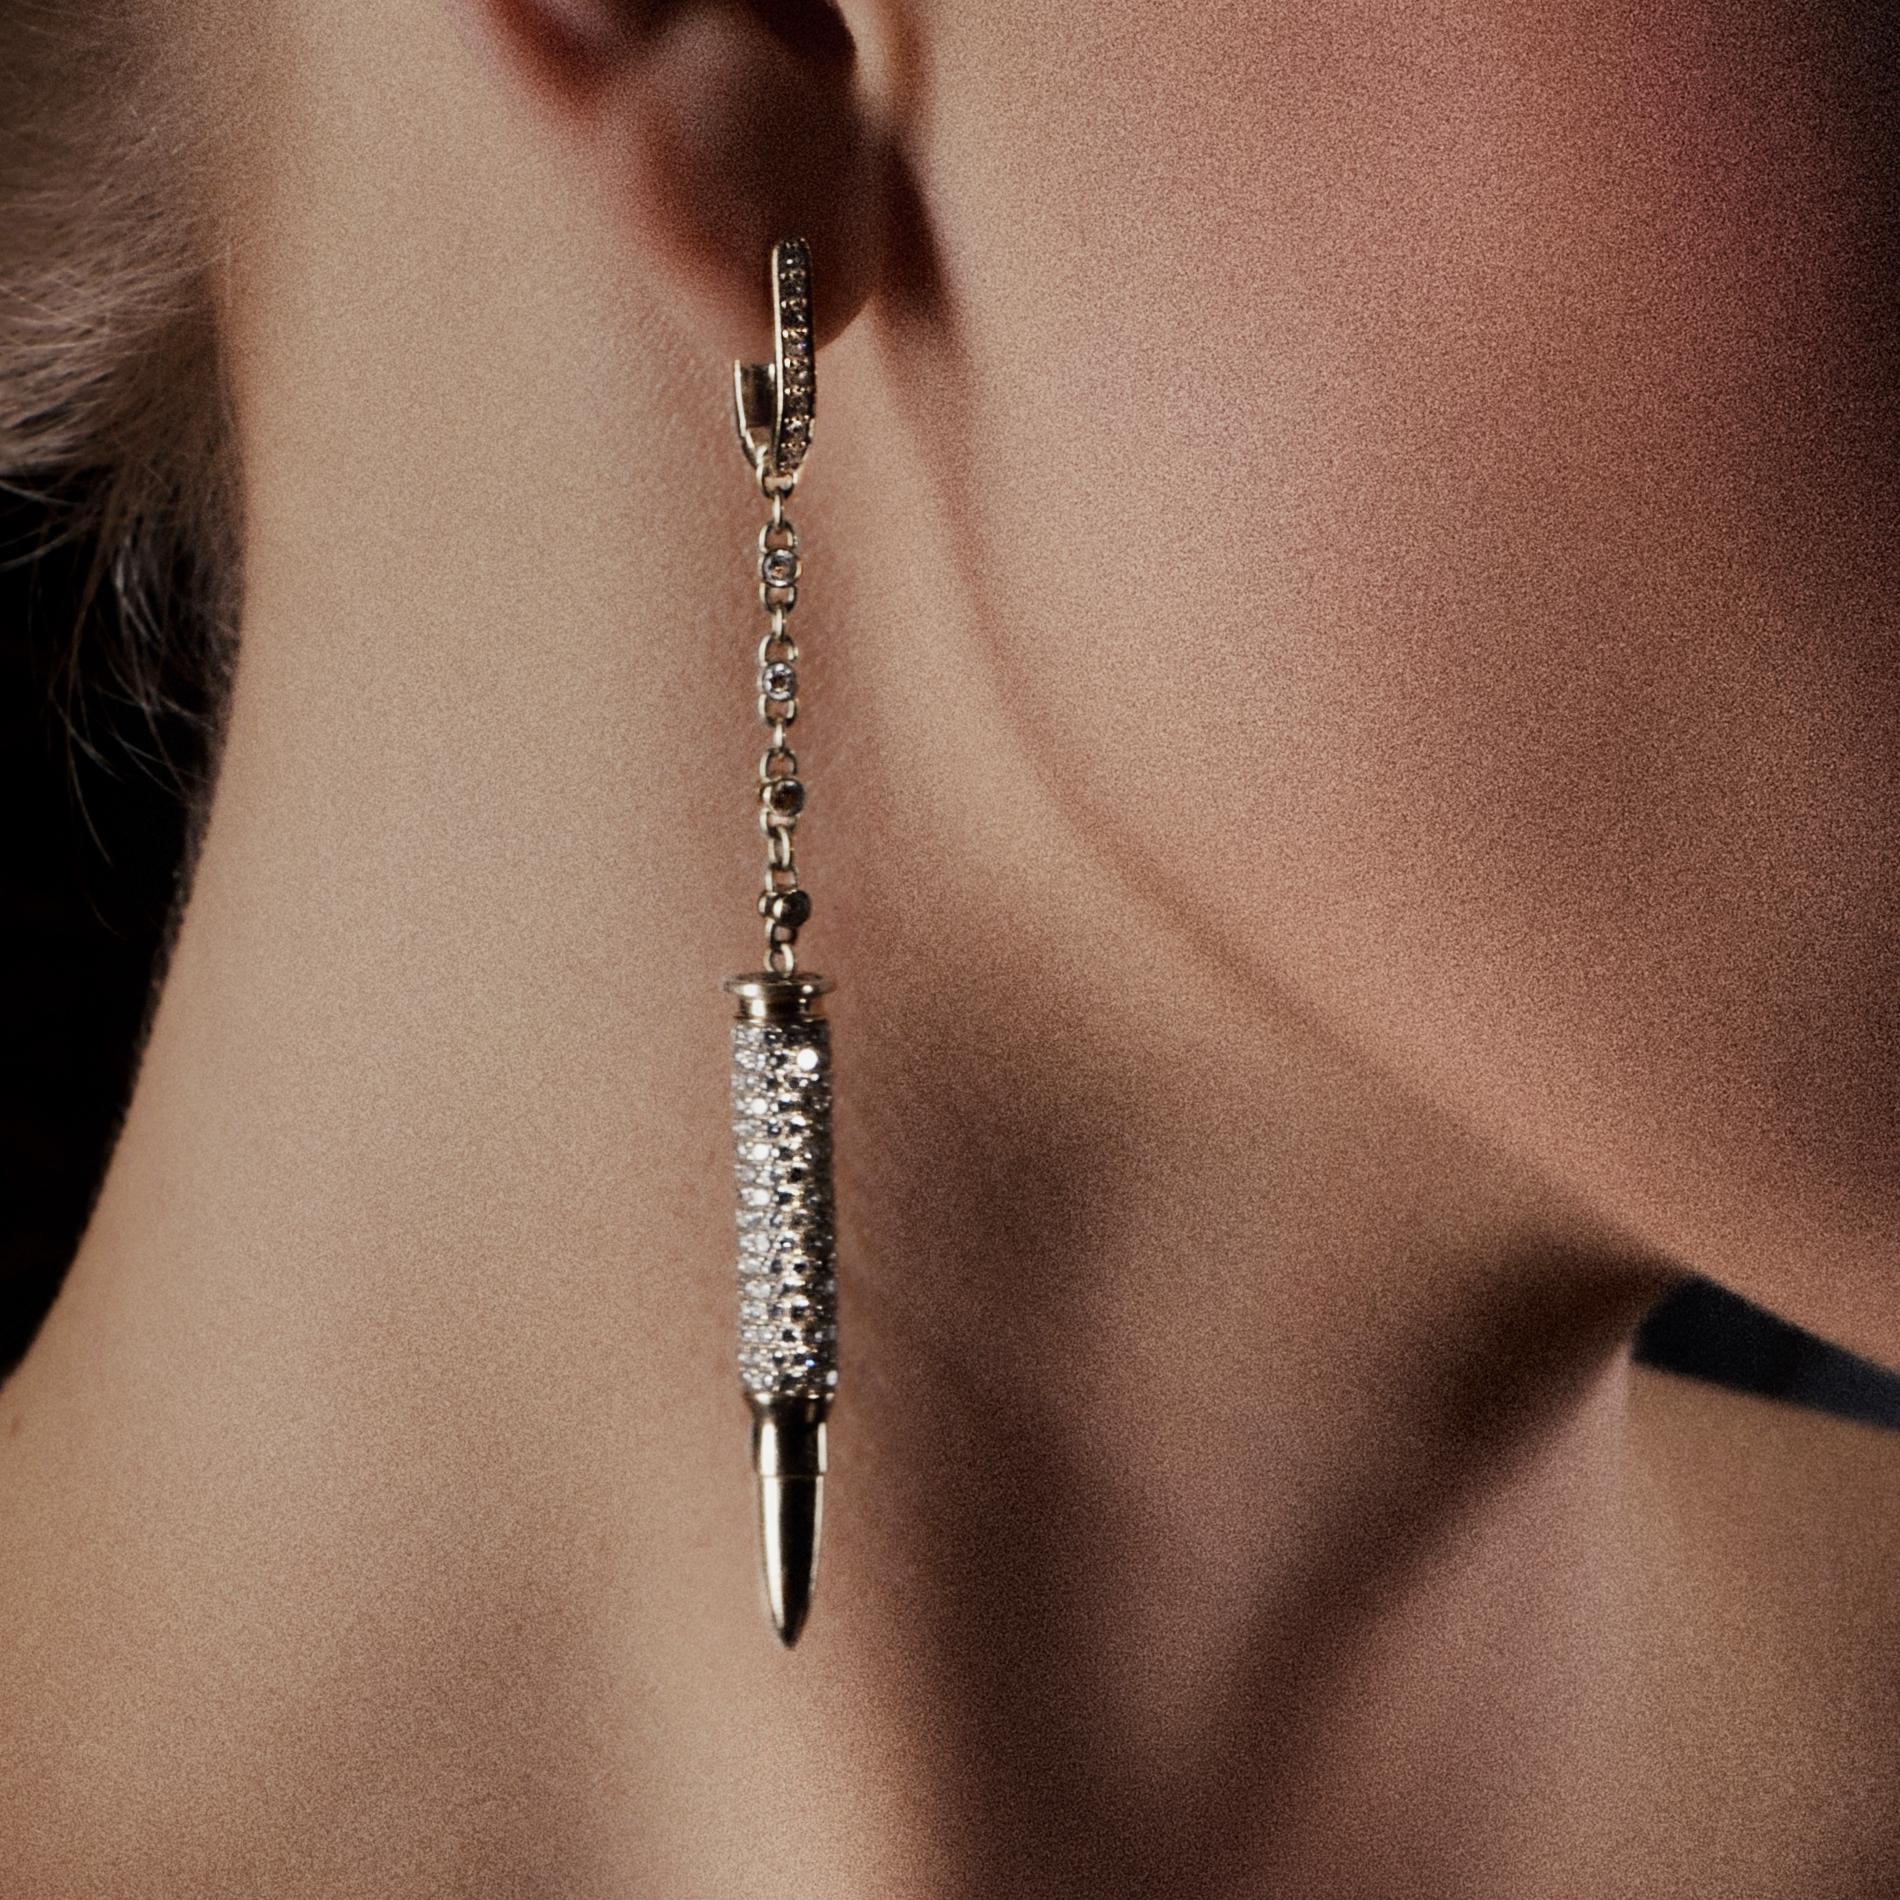 Sybarite Jewellery ist eine in London ansässige Luxusmarke, die außergewöhnliche Stücke herstellt, die sowohl im Design als auch in der Ausführung unvergleichlich sind. Unter der Leitung der Gründerin Margarita Prykhodko, einer ehemaligen